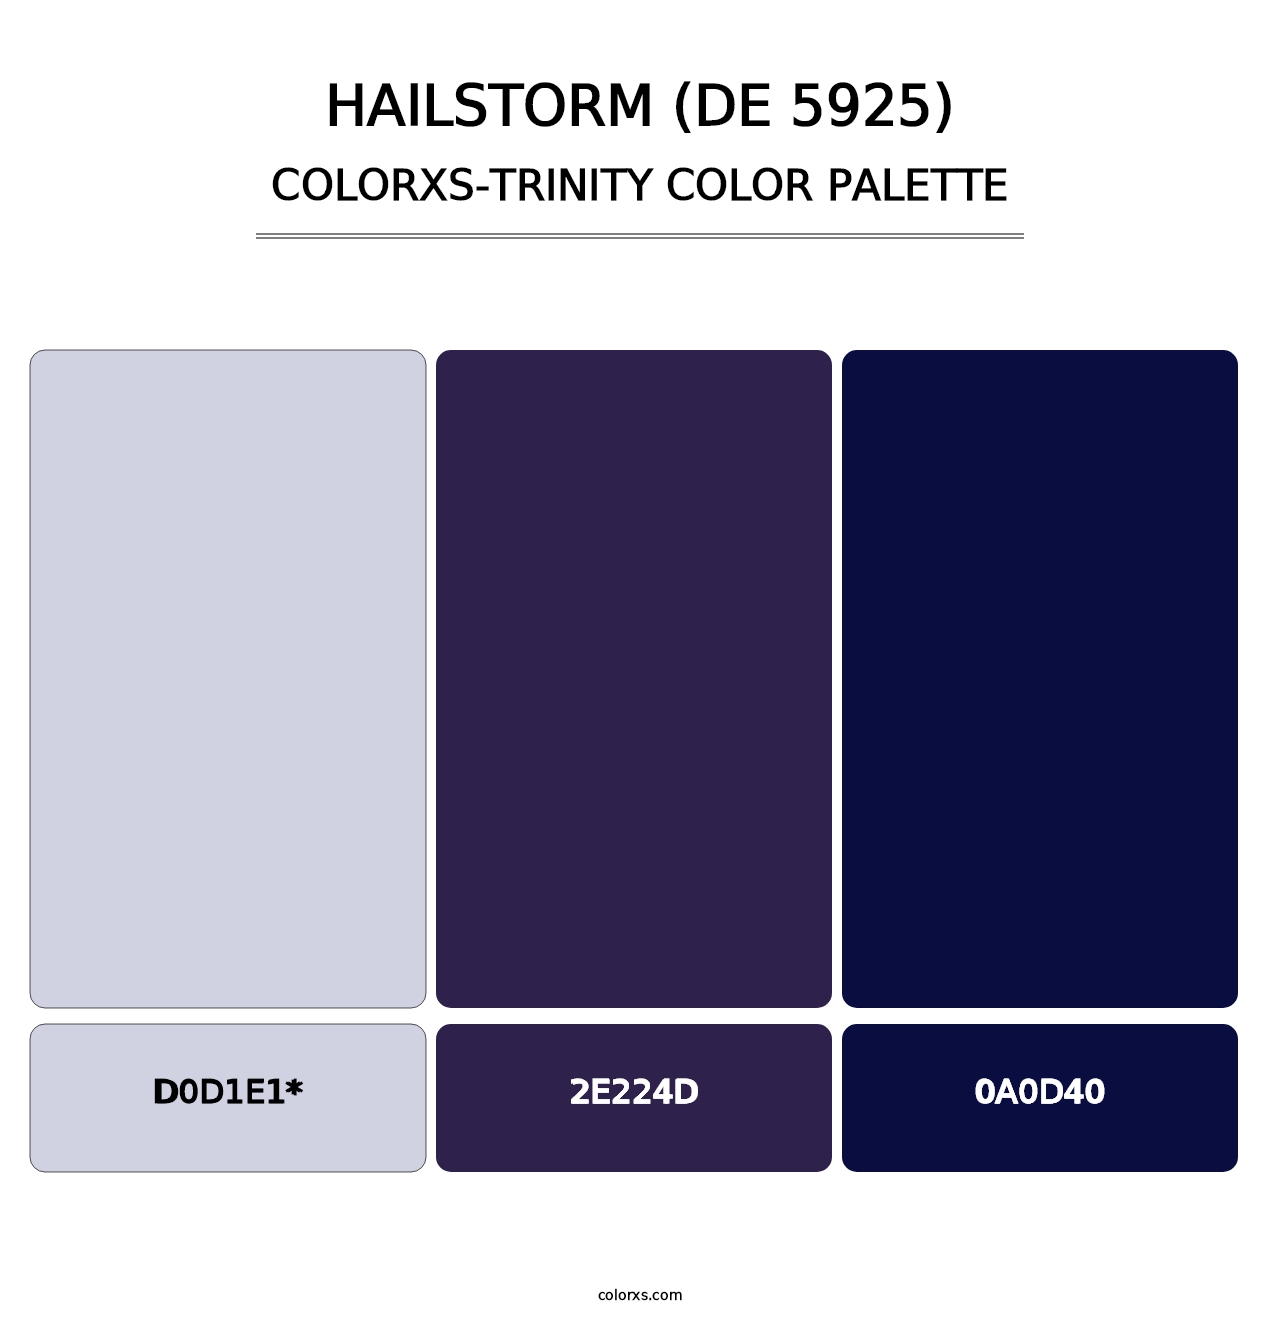 Hailstorm (DE 5925) - Colorxs Trinity Palette